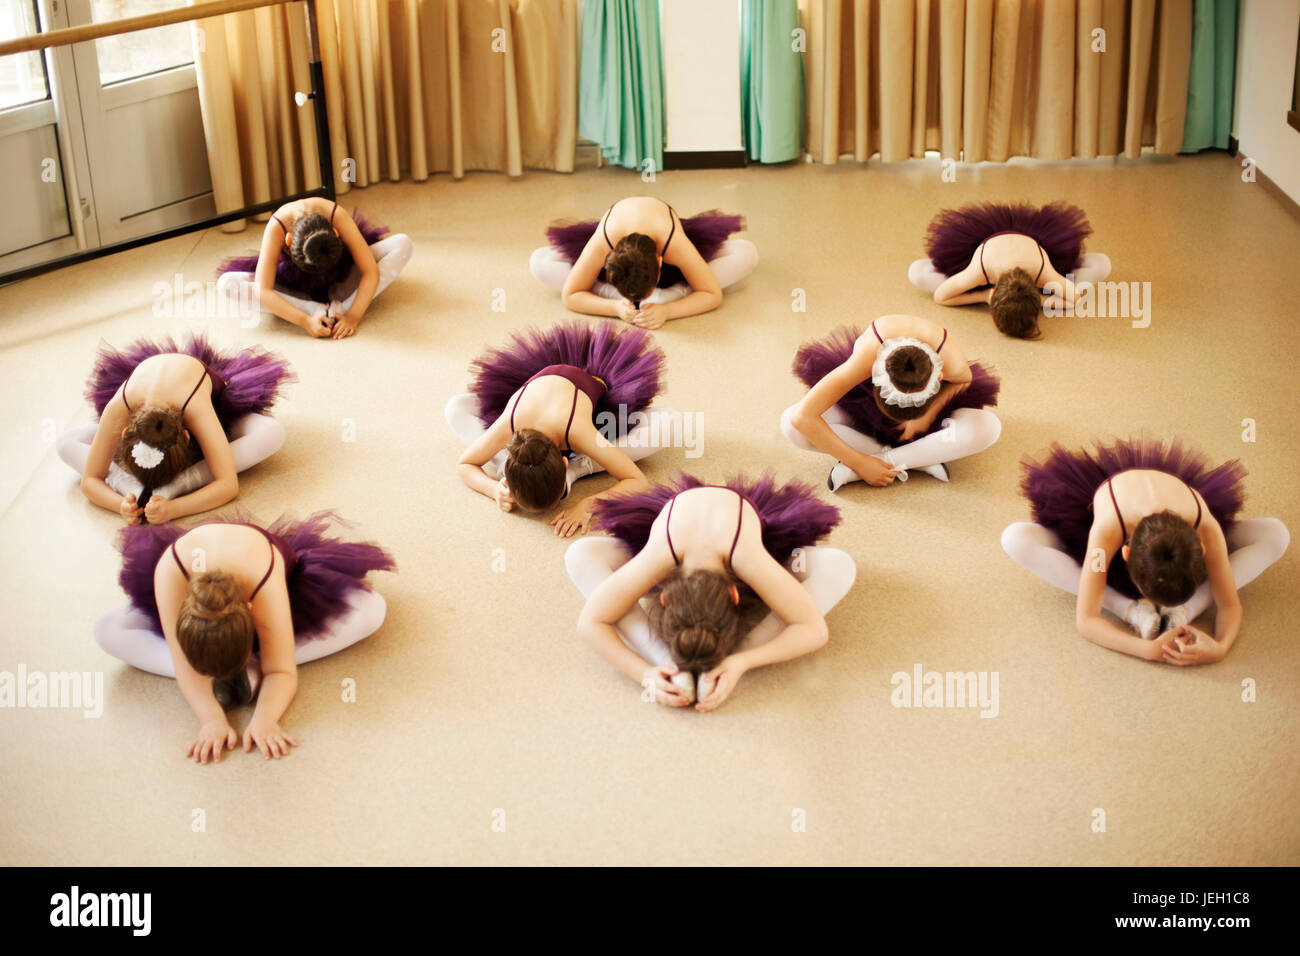 Baby ballerinas in ballet studio Stock Photo